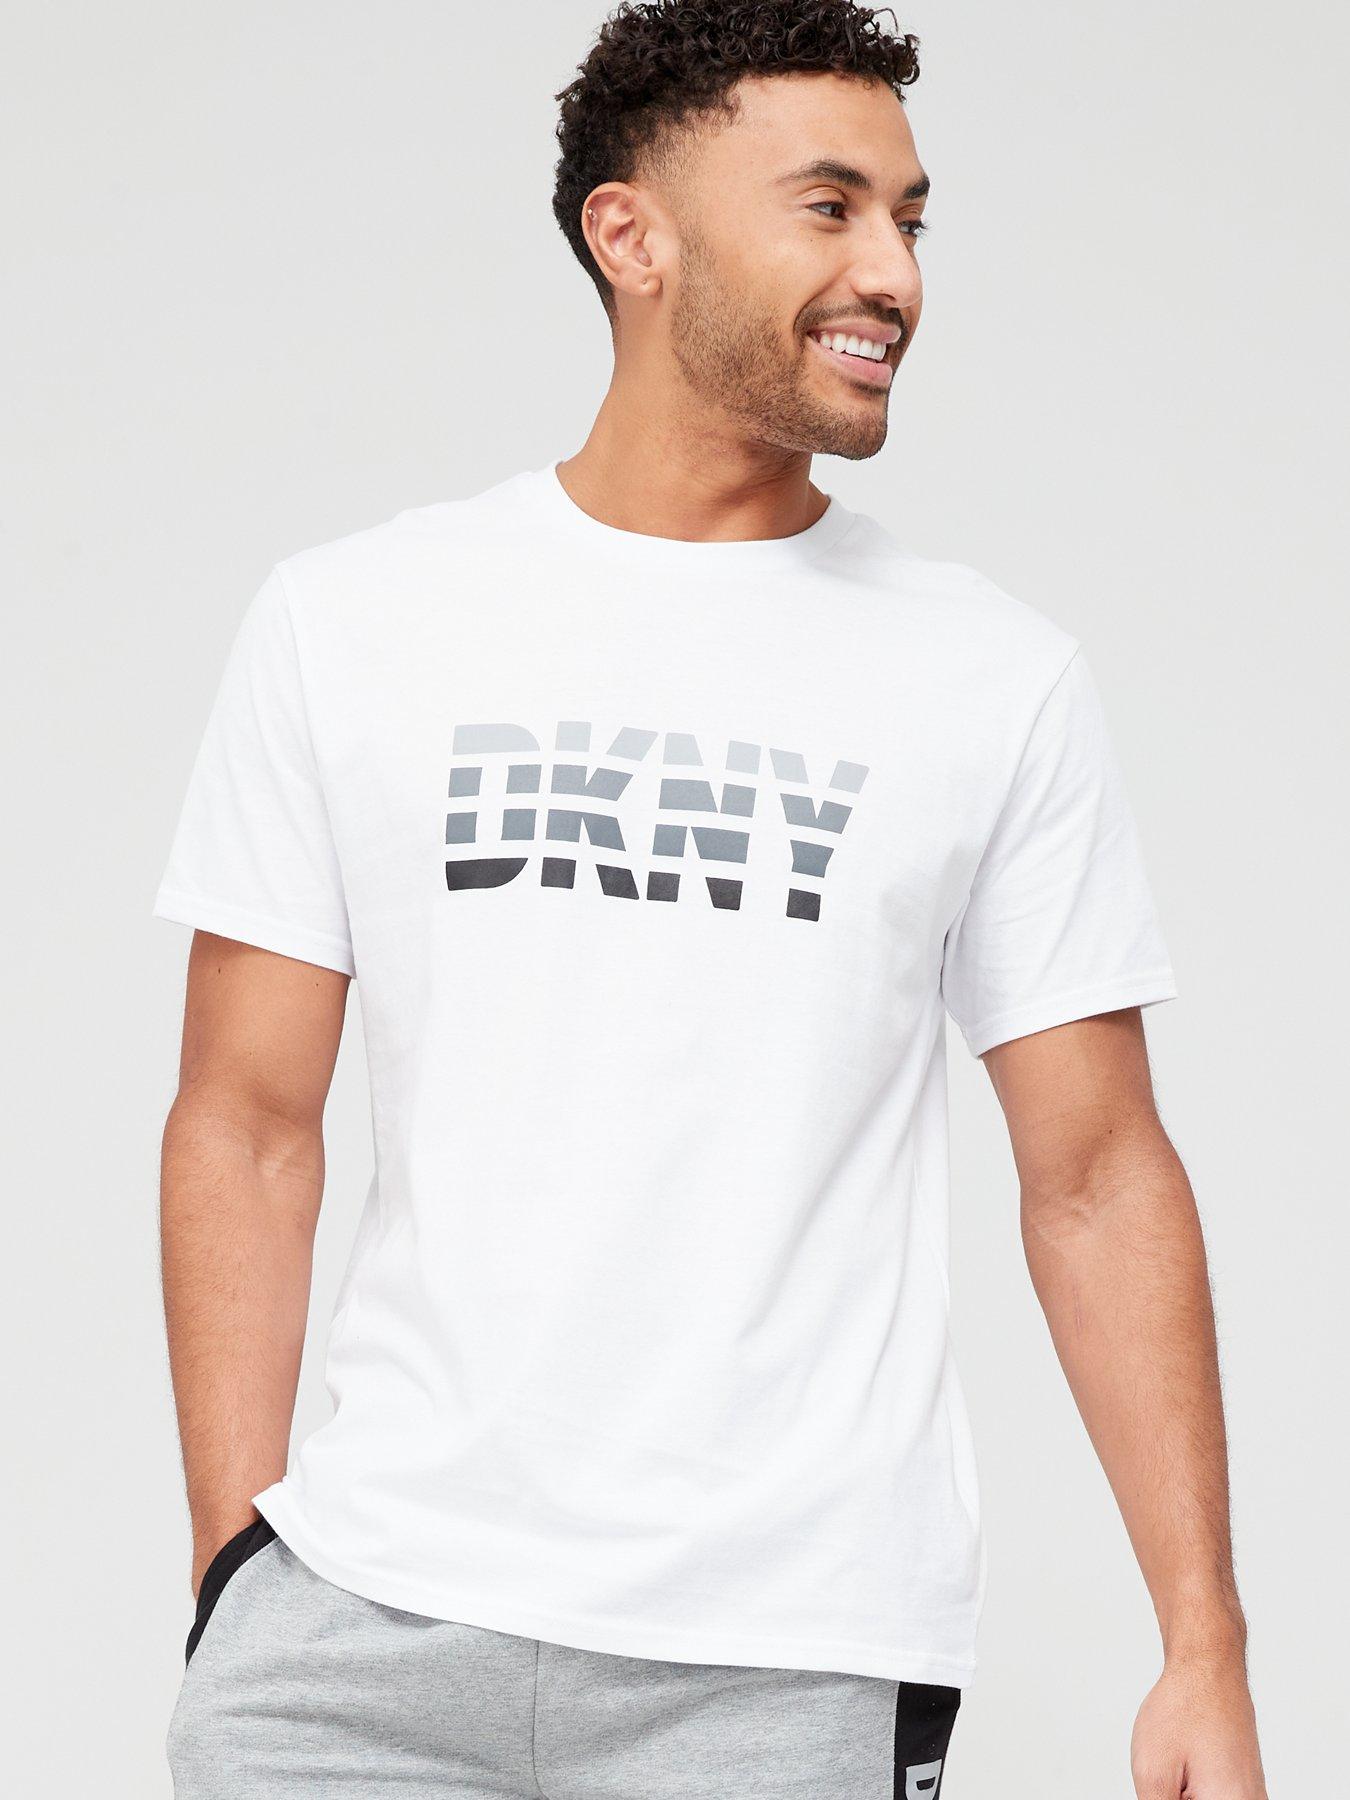 T-Shirts | Dkny | Loungewear | Nightwear loungewear & | Men